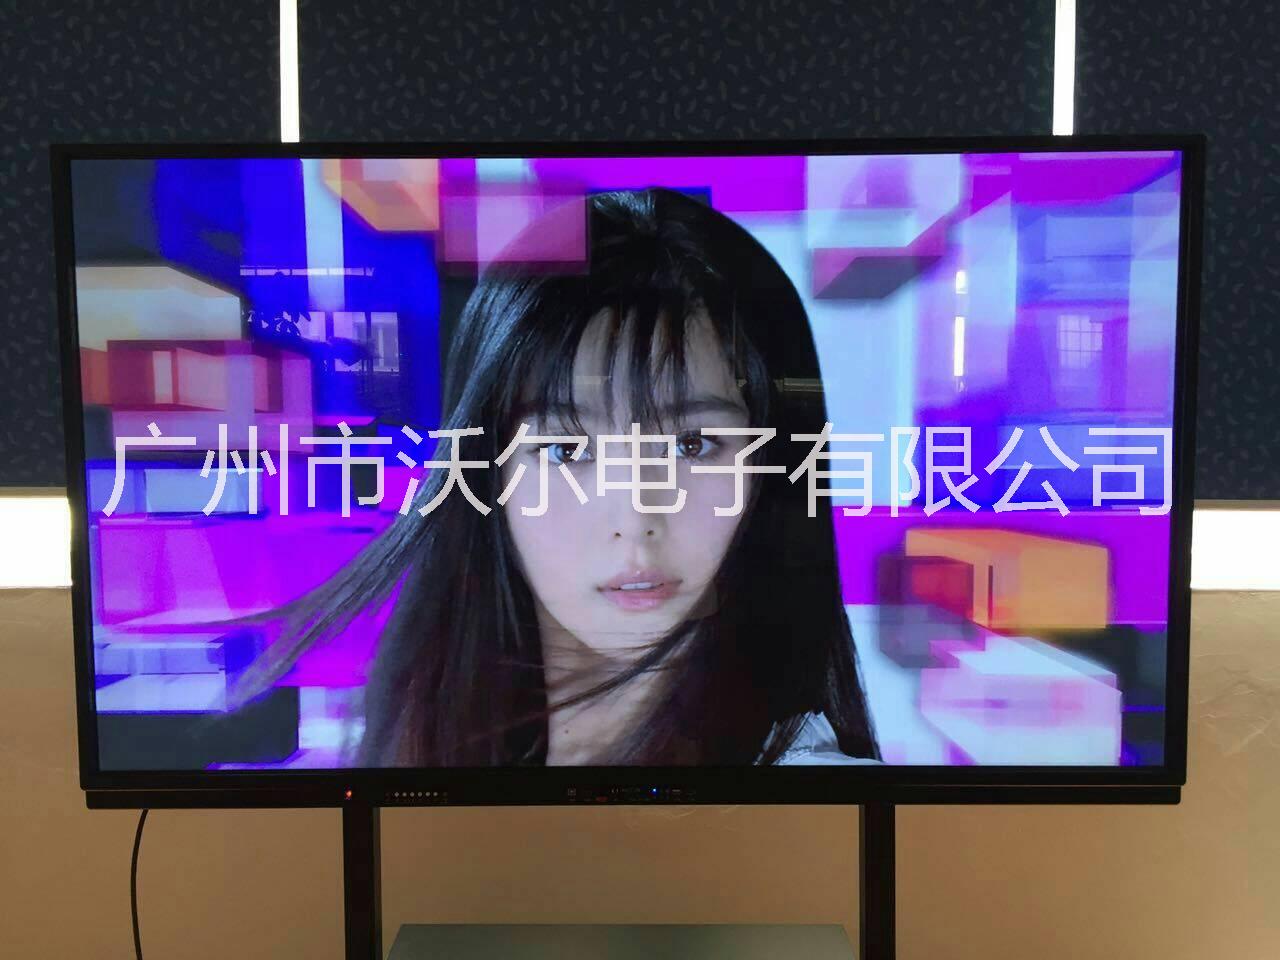 广州气象局LG98寸液晶显示器 LG98寸电视价格